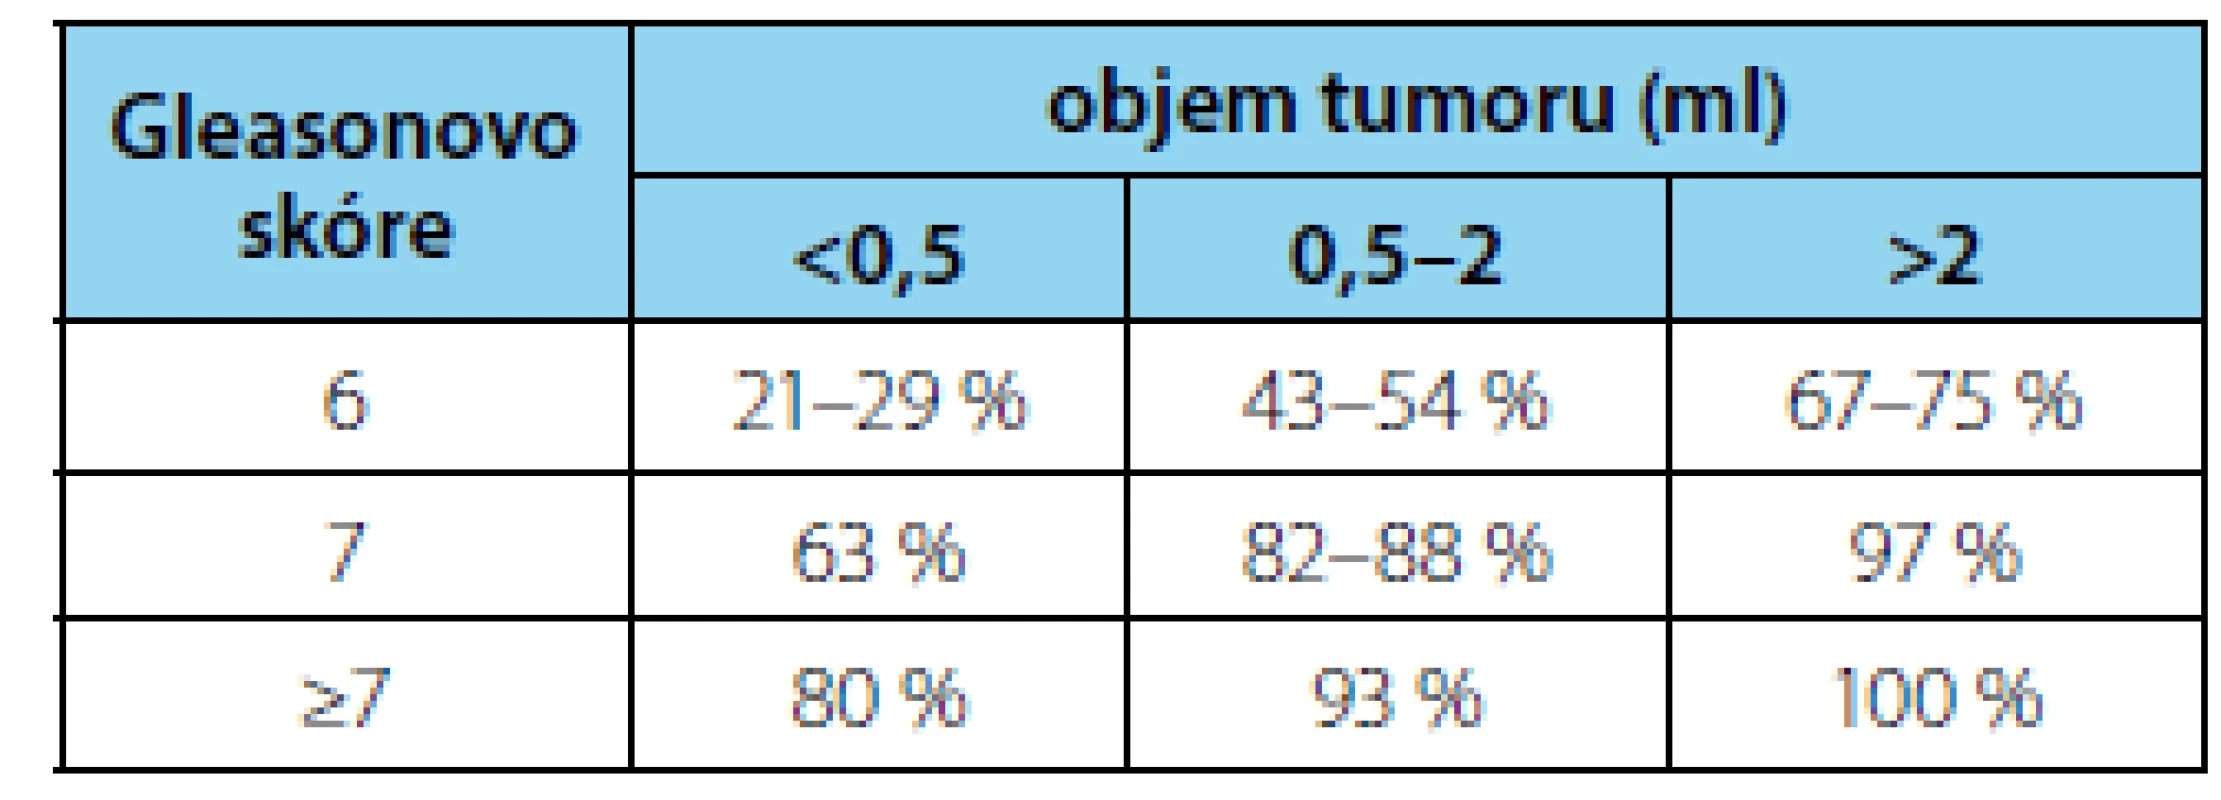 Záchyt karcinomu prostaty pomocí mpMRI
(52)<br>
Tab. 2. Detection of prostate cancer using mpMRI
(52)